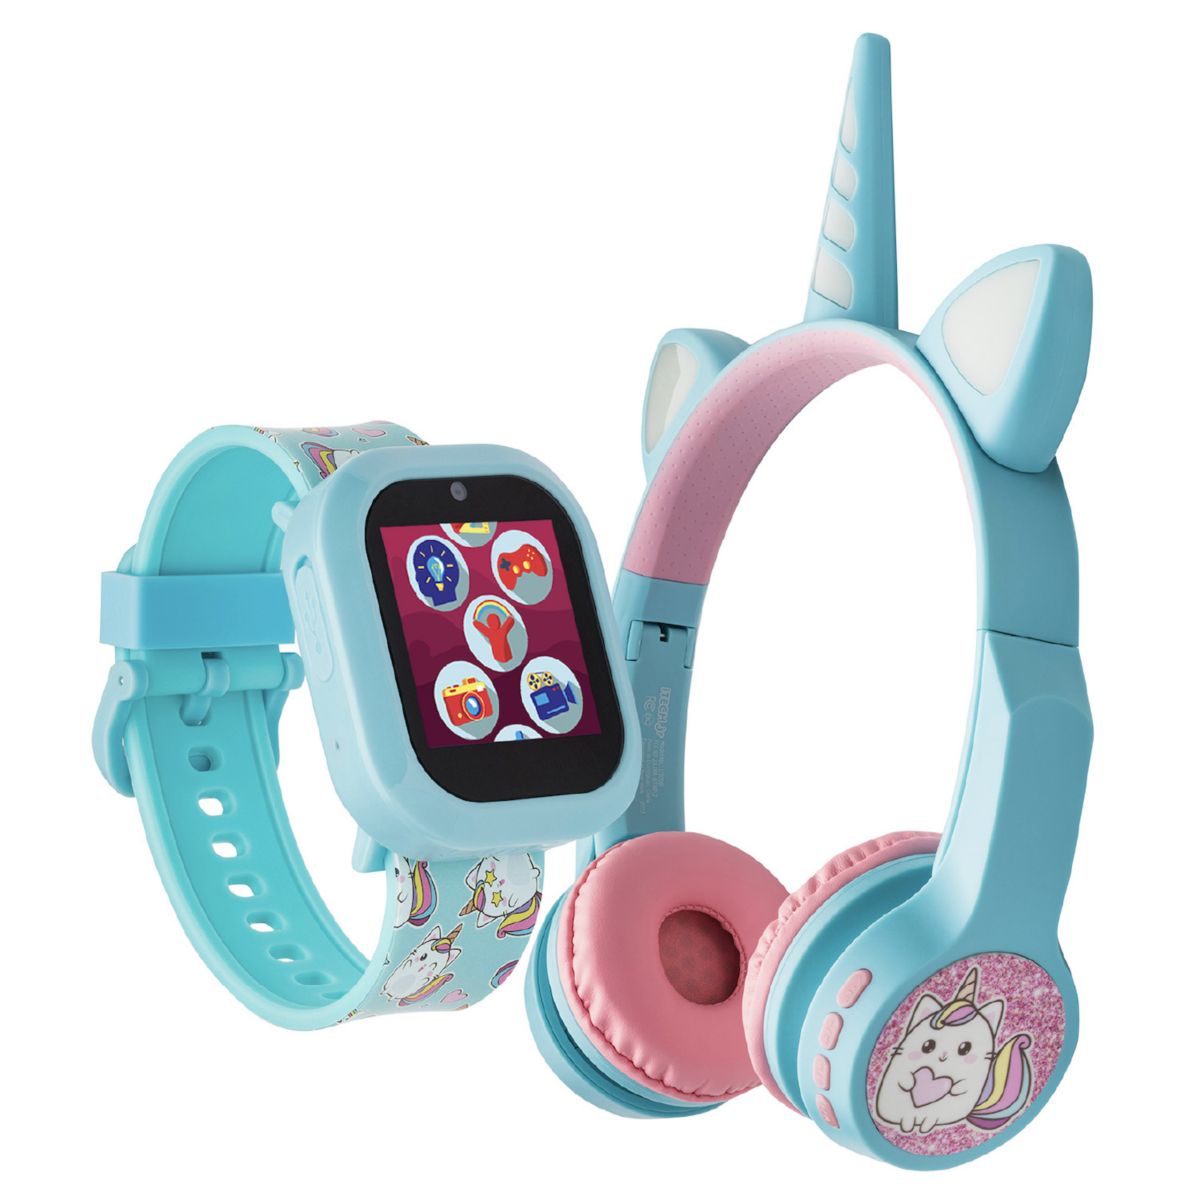 Комплект умных часов Playzoom V3 Light Blue Unicorn и наушников Bluetooth Playzoom